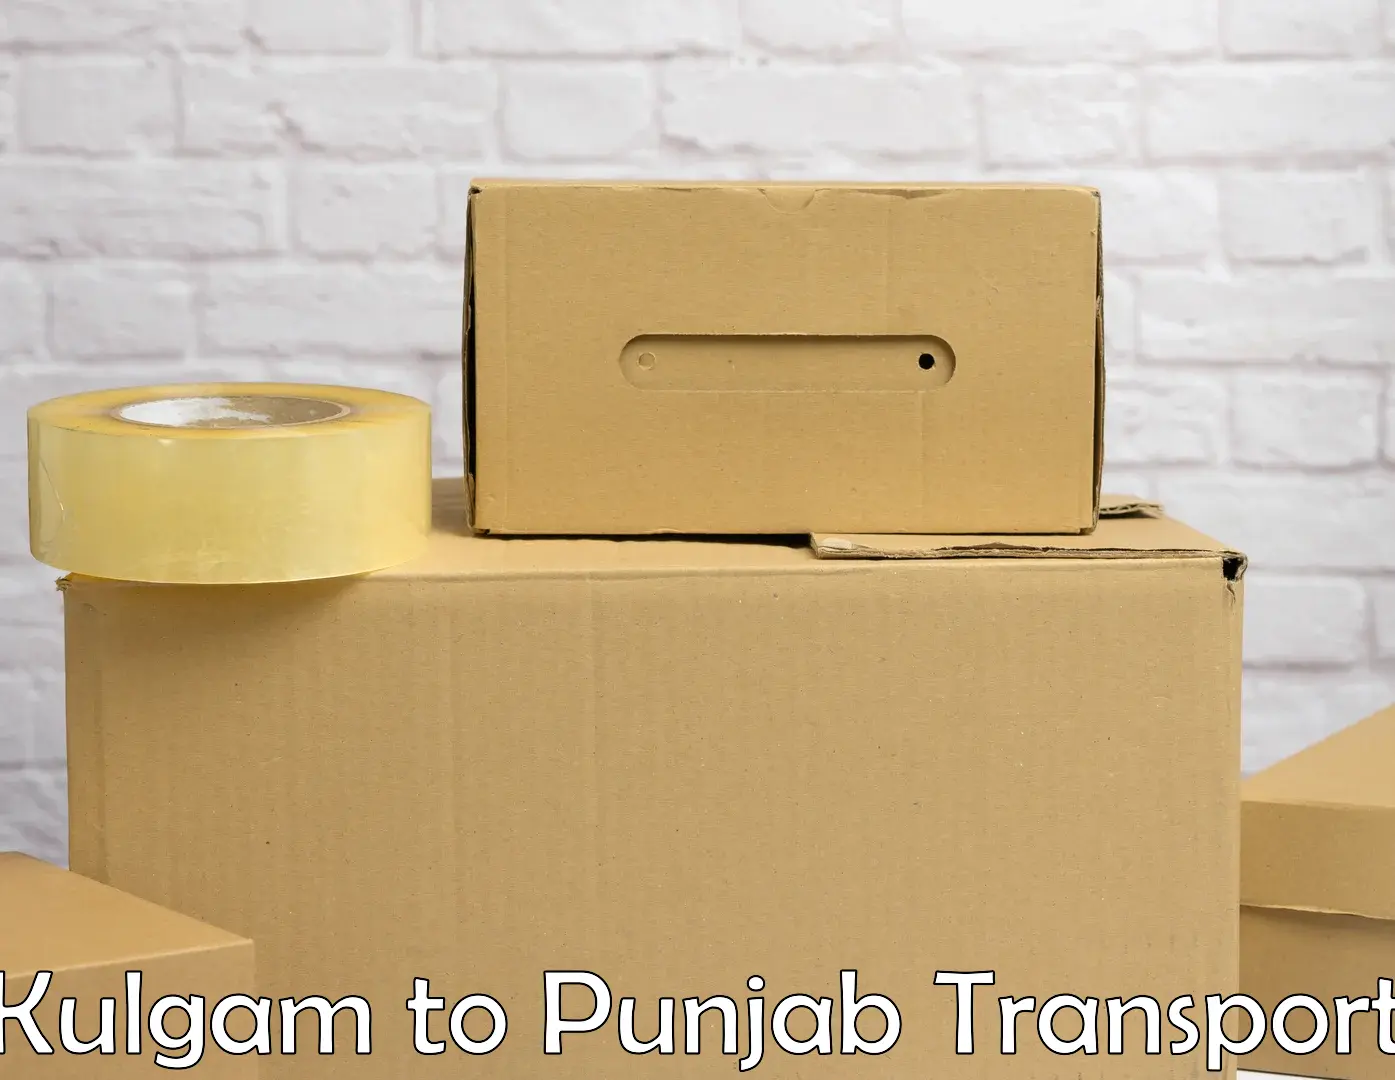 Transport services Kulgam to Central University of Punjab Bathinda